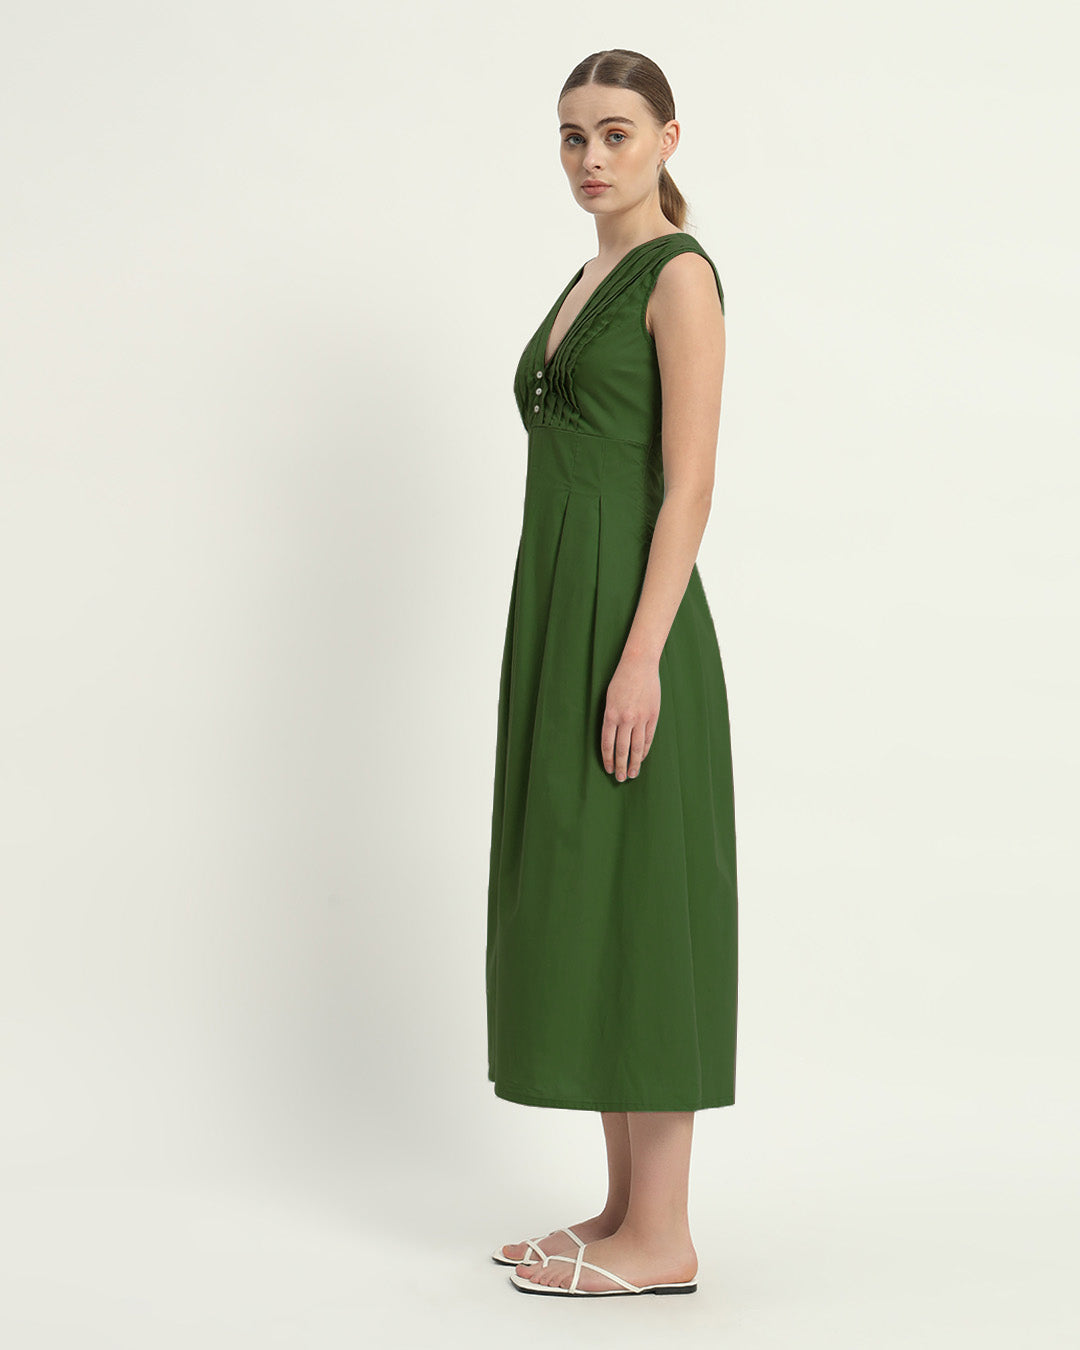 The Emerald Mendoza Cotton Dress